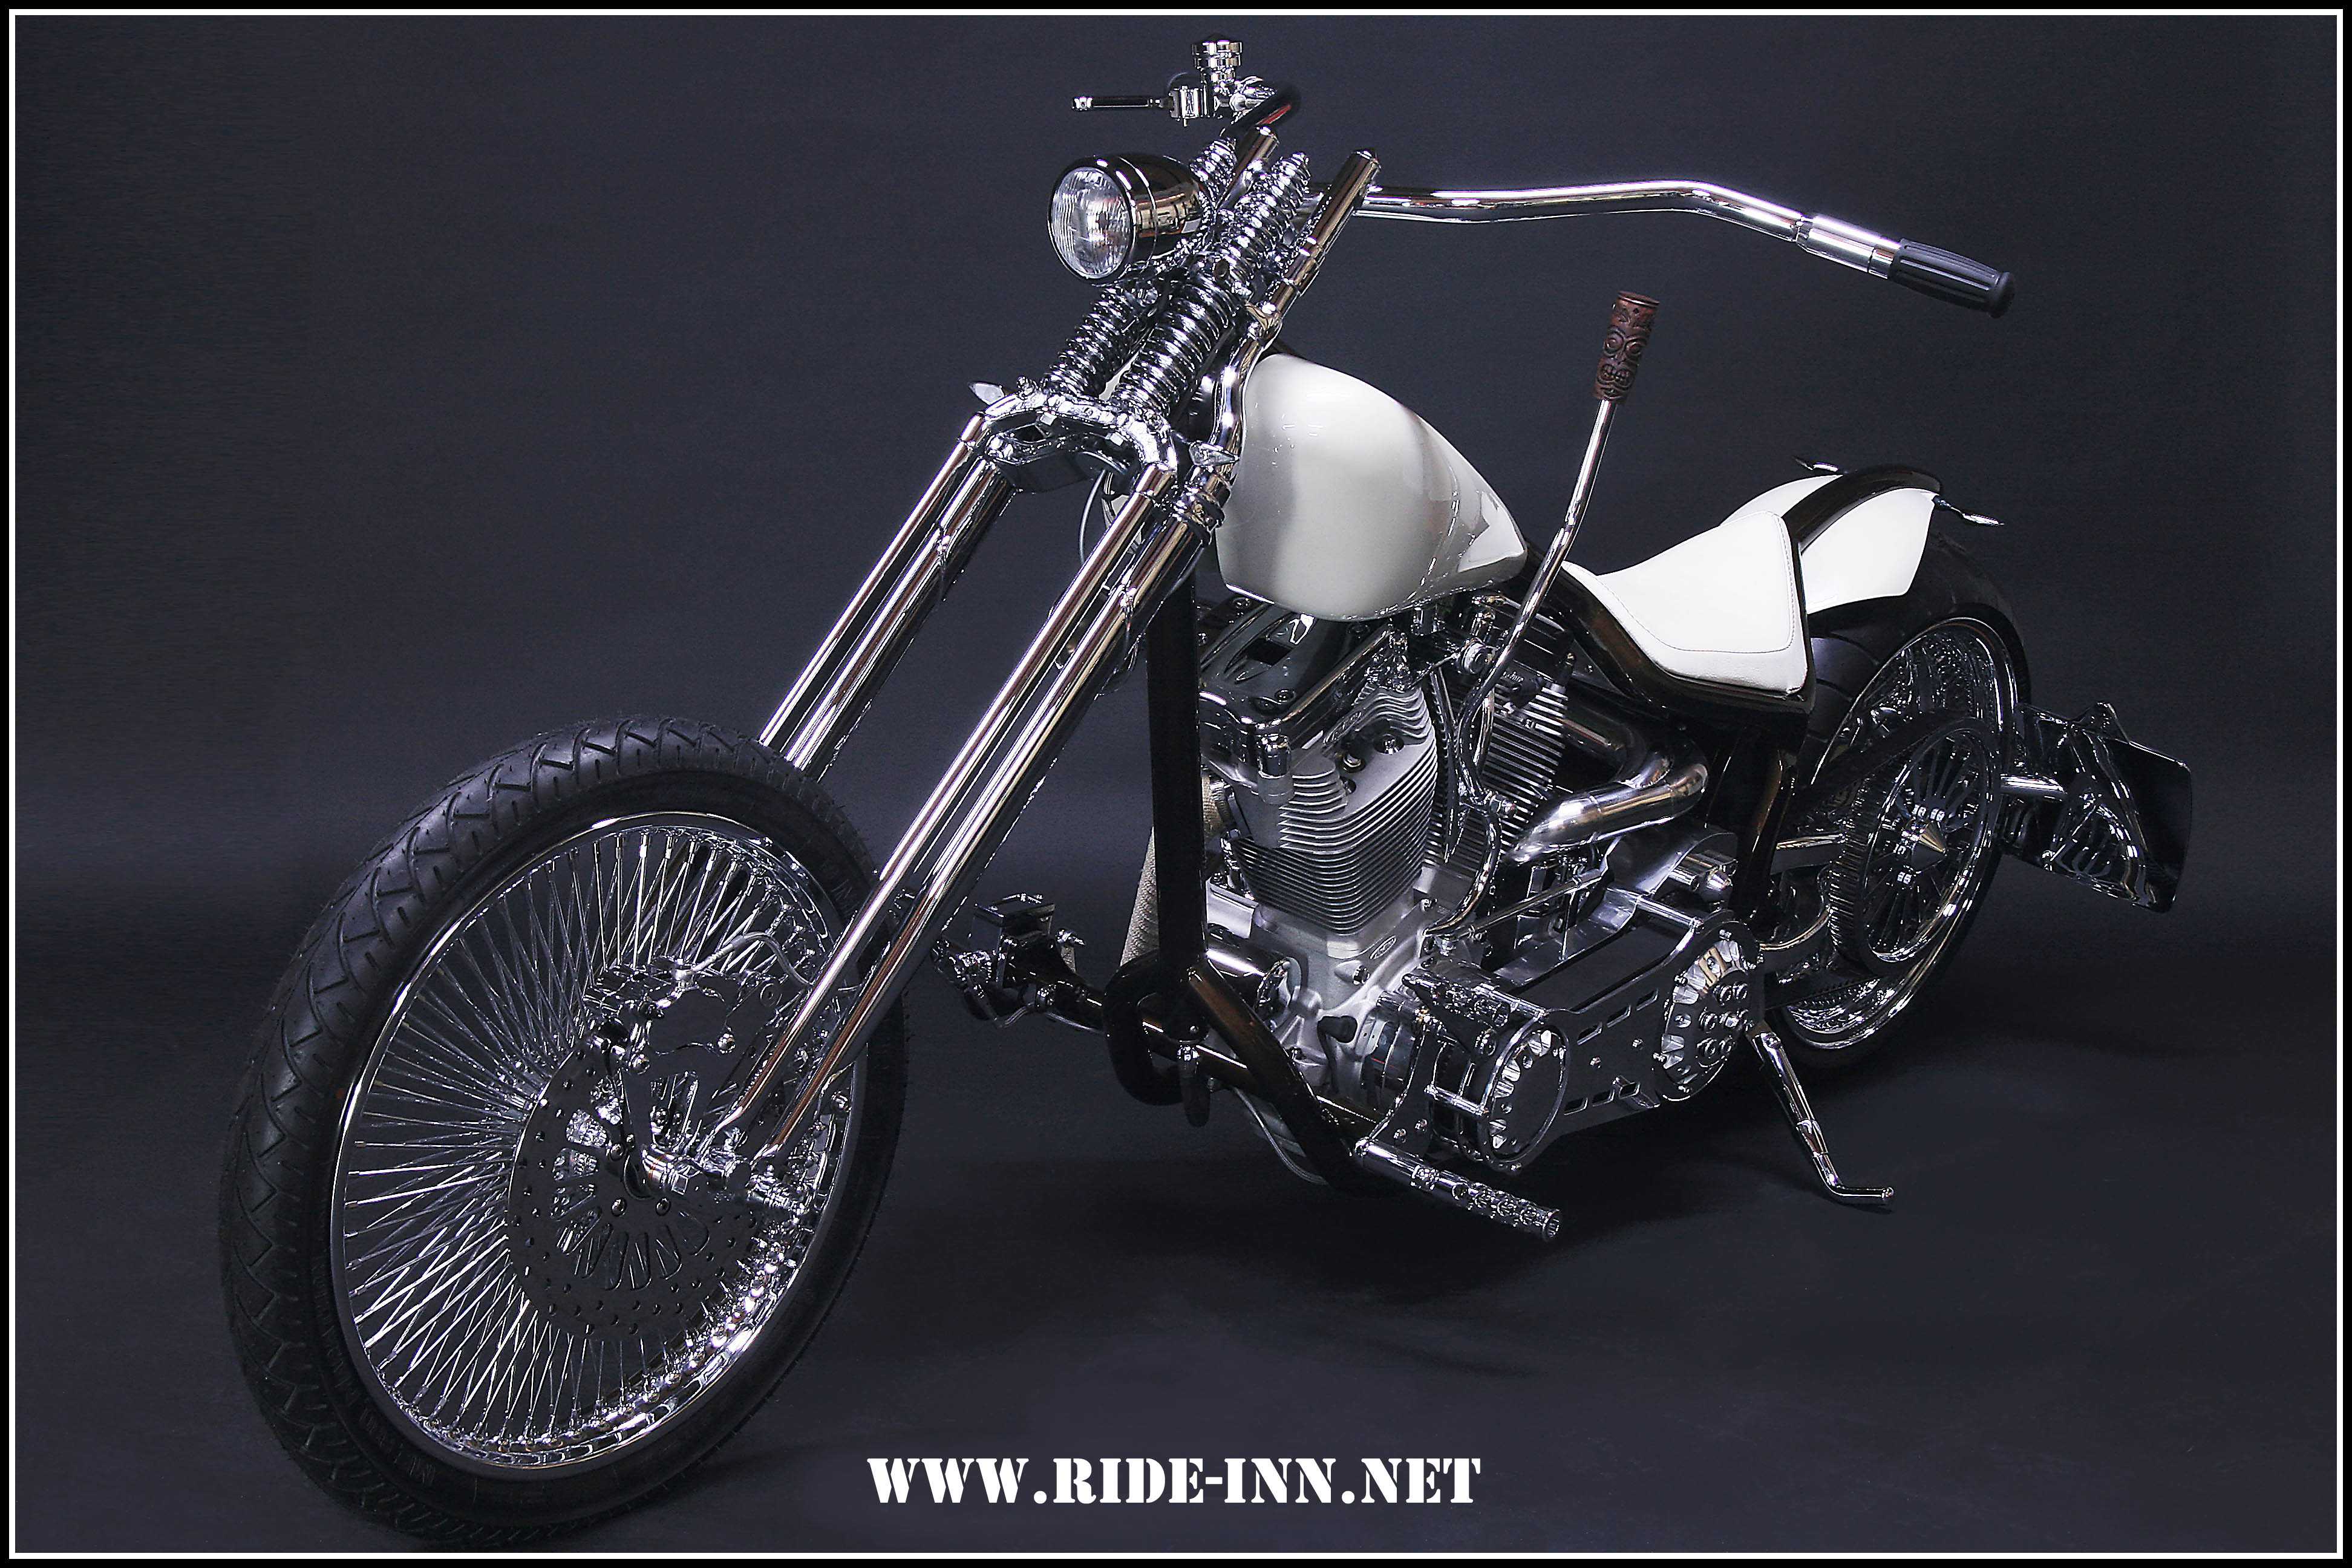 Bild 1 Ride-Inn Münsterland Parts & Performance for Harley Davidson in Legden